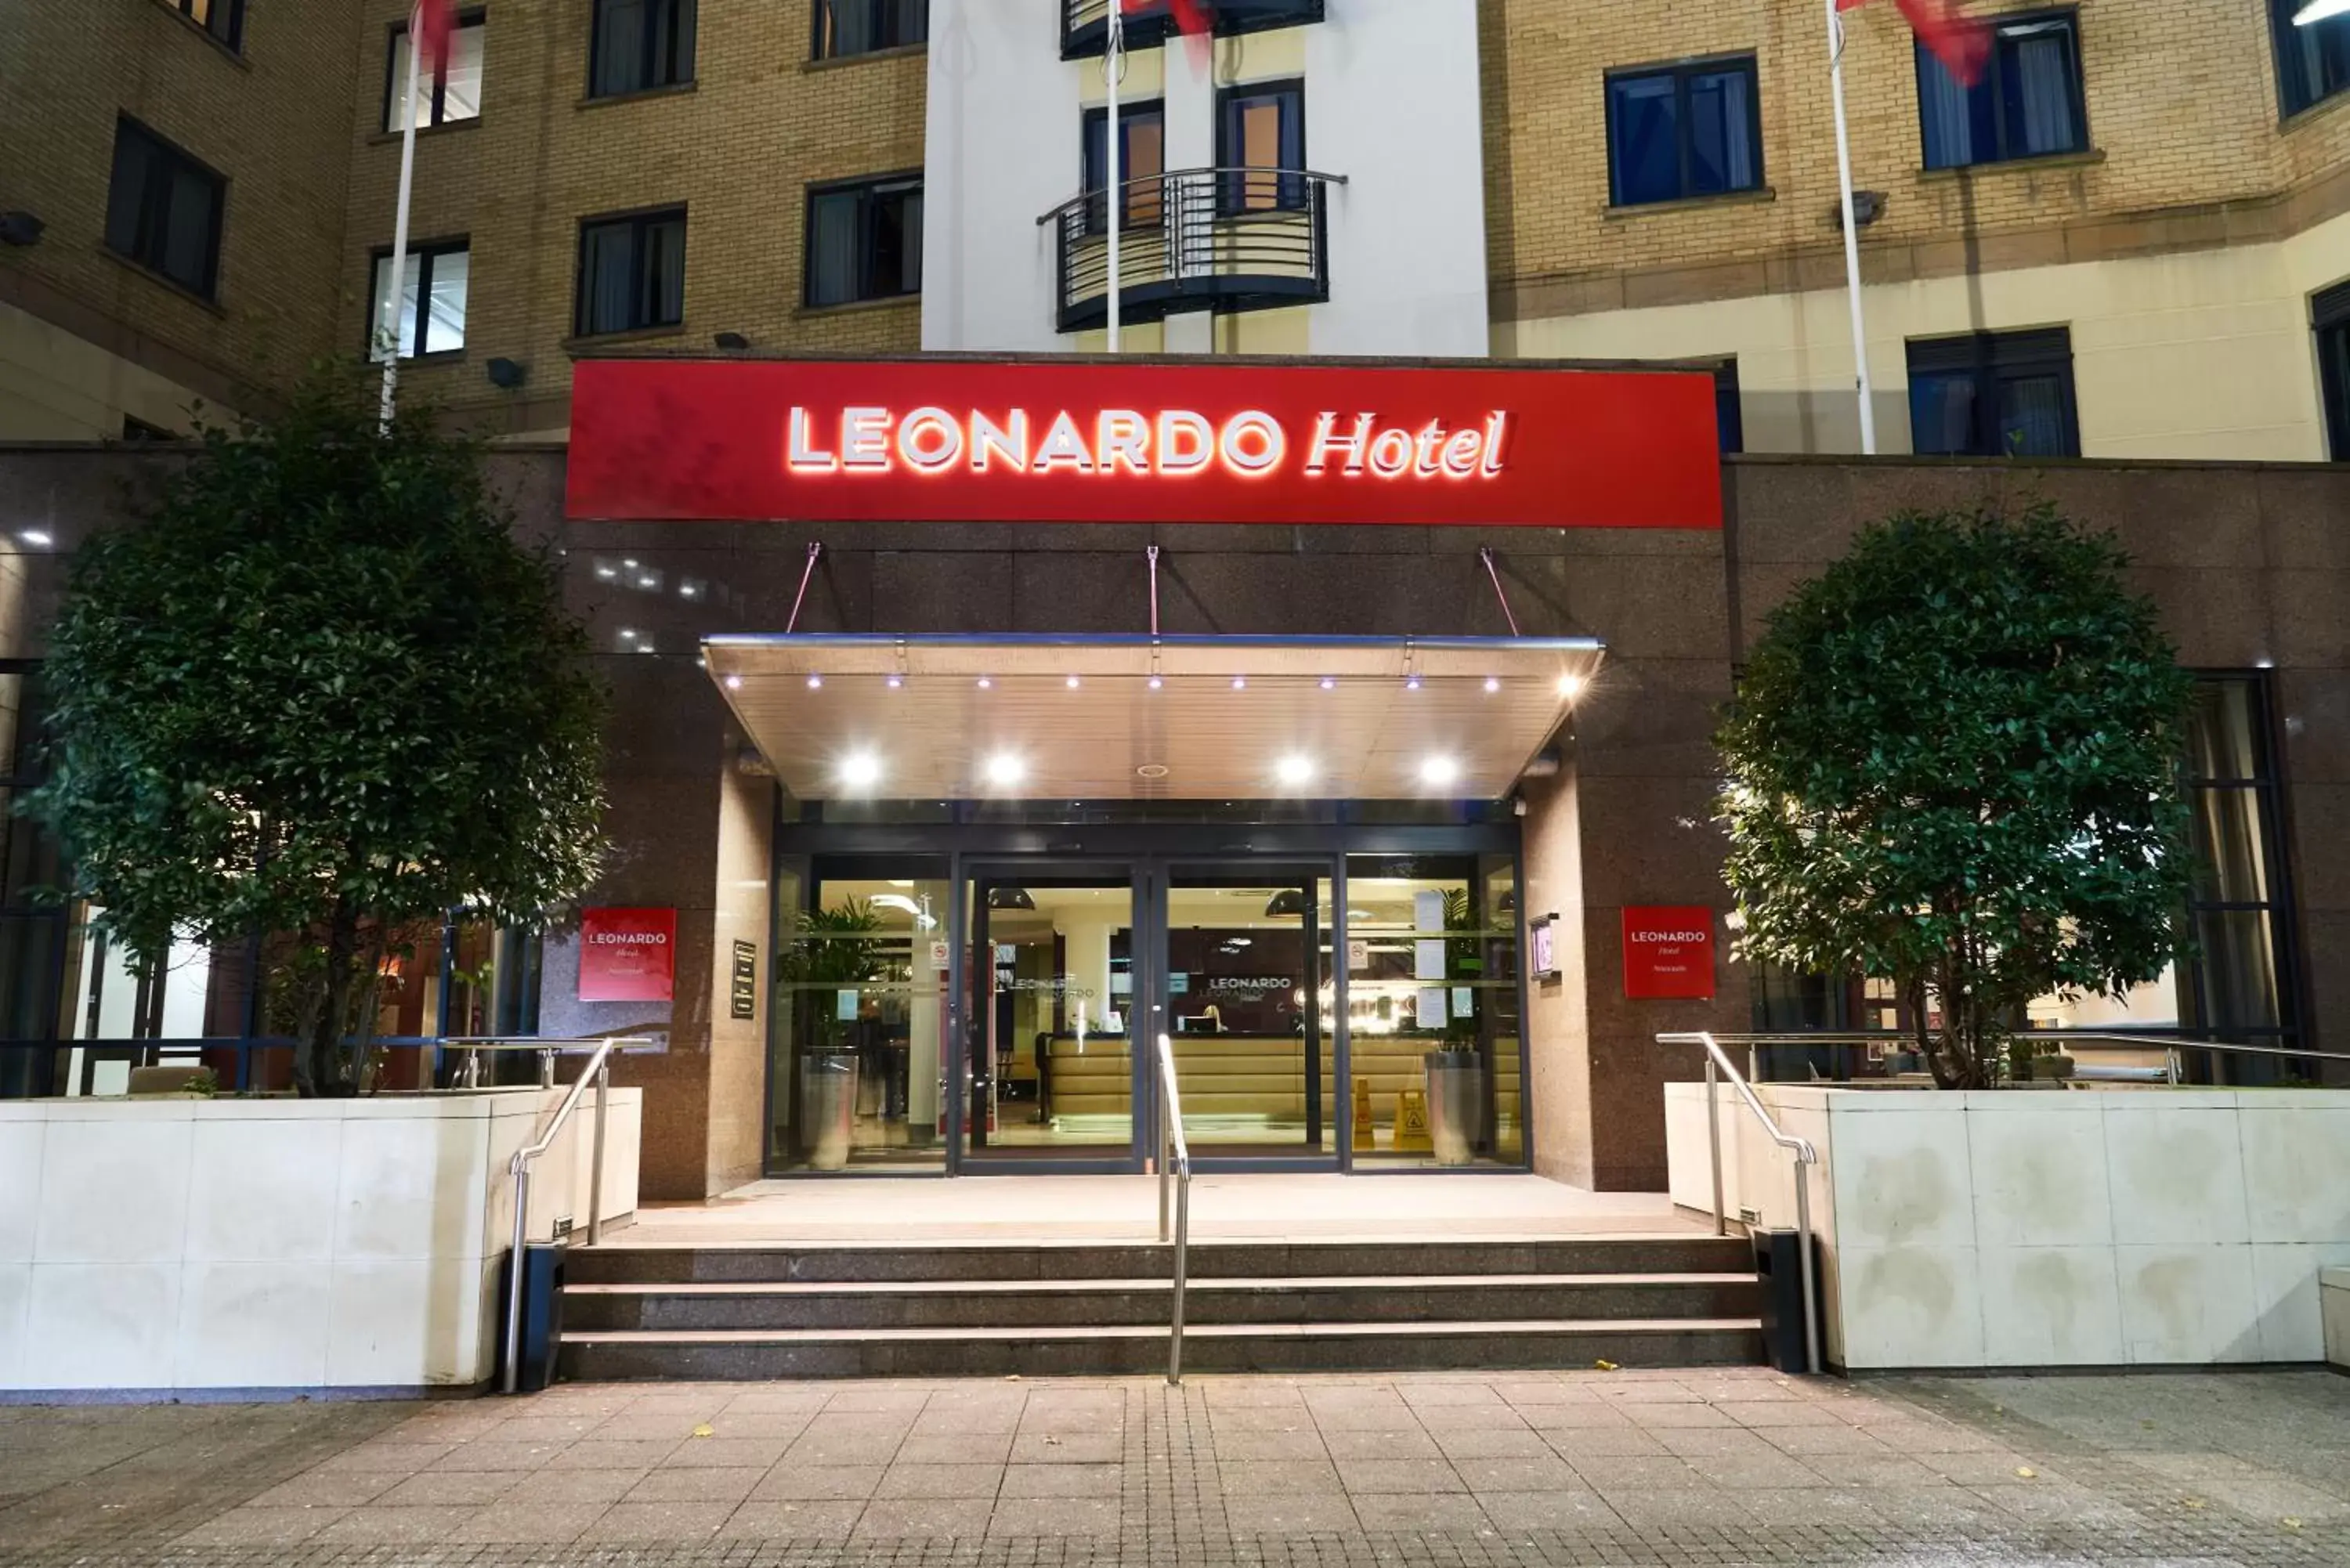 Property building in Leonardo Hotel Newcastle - Formerly Jurys Inn